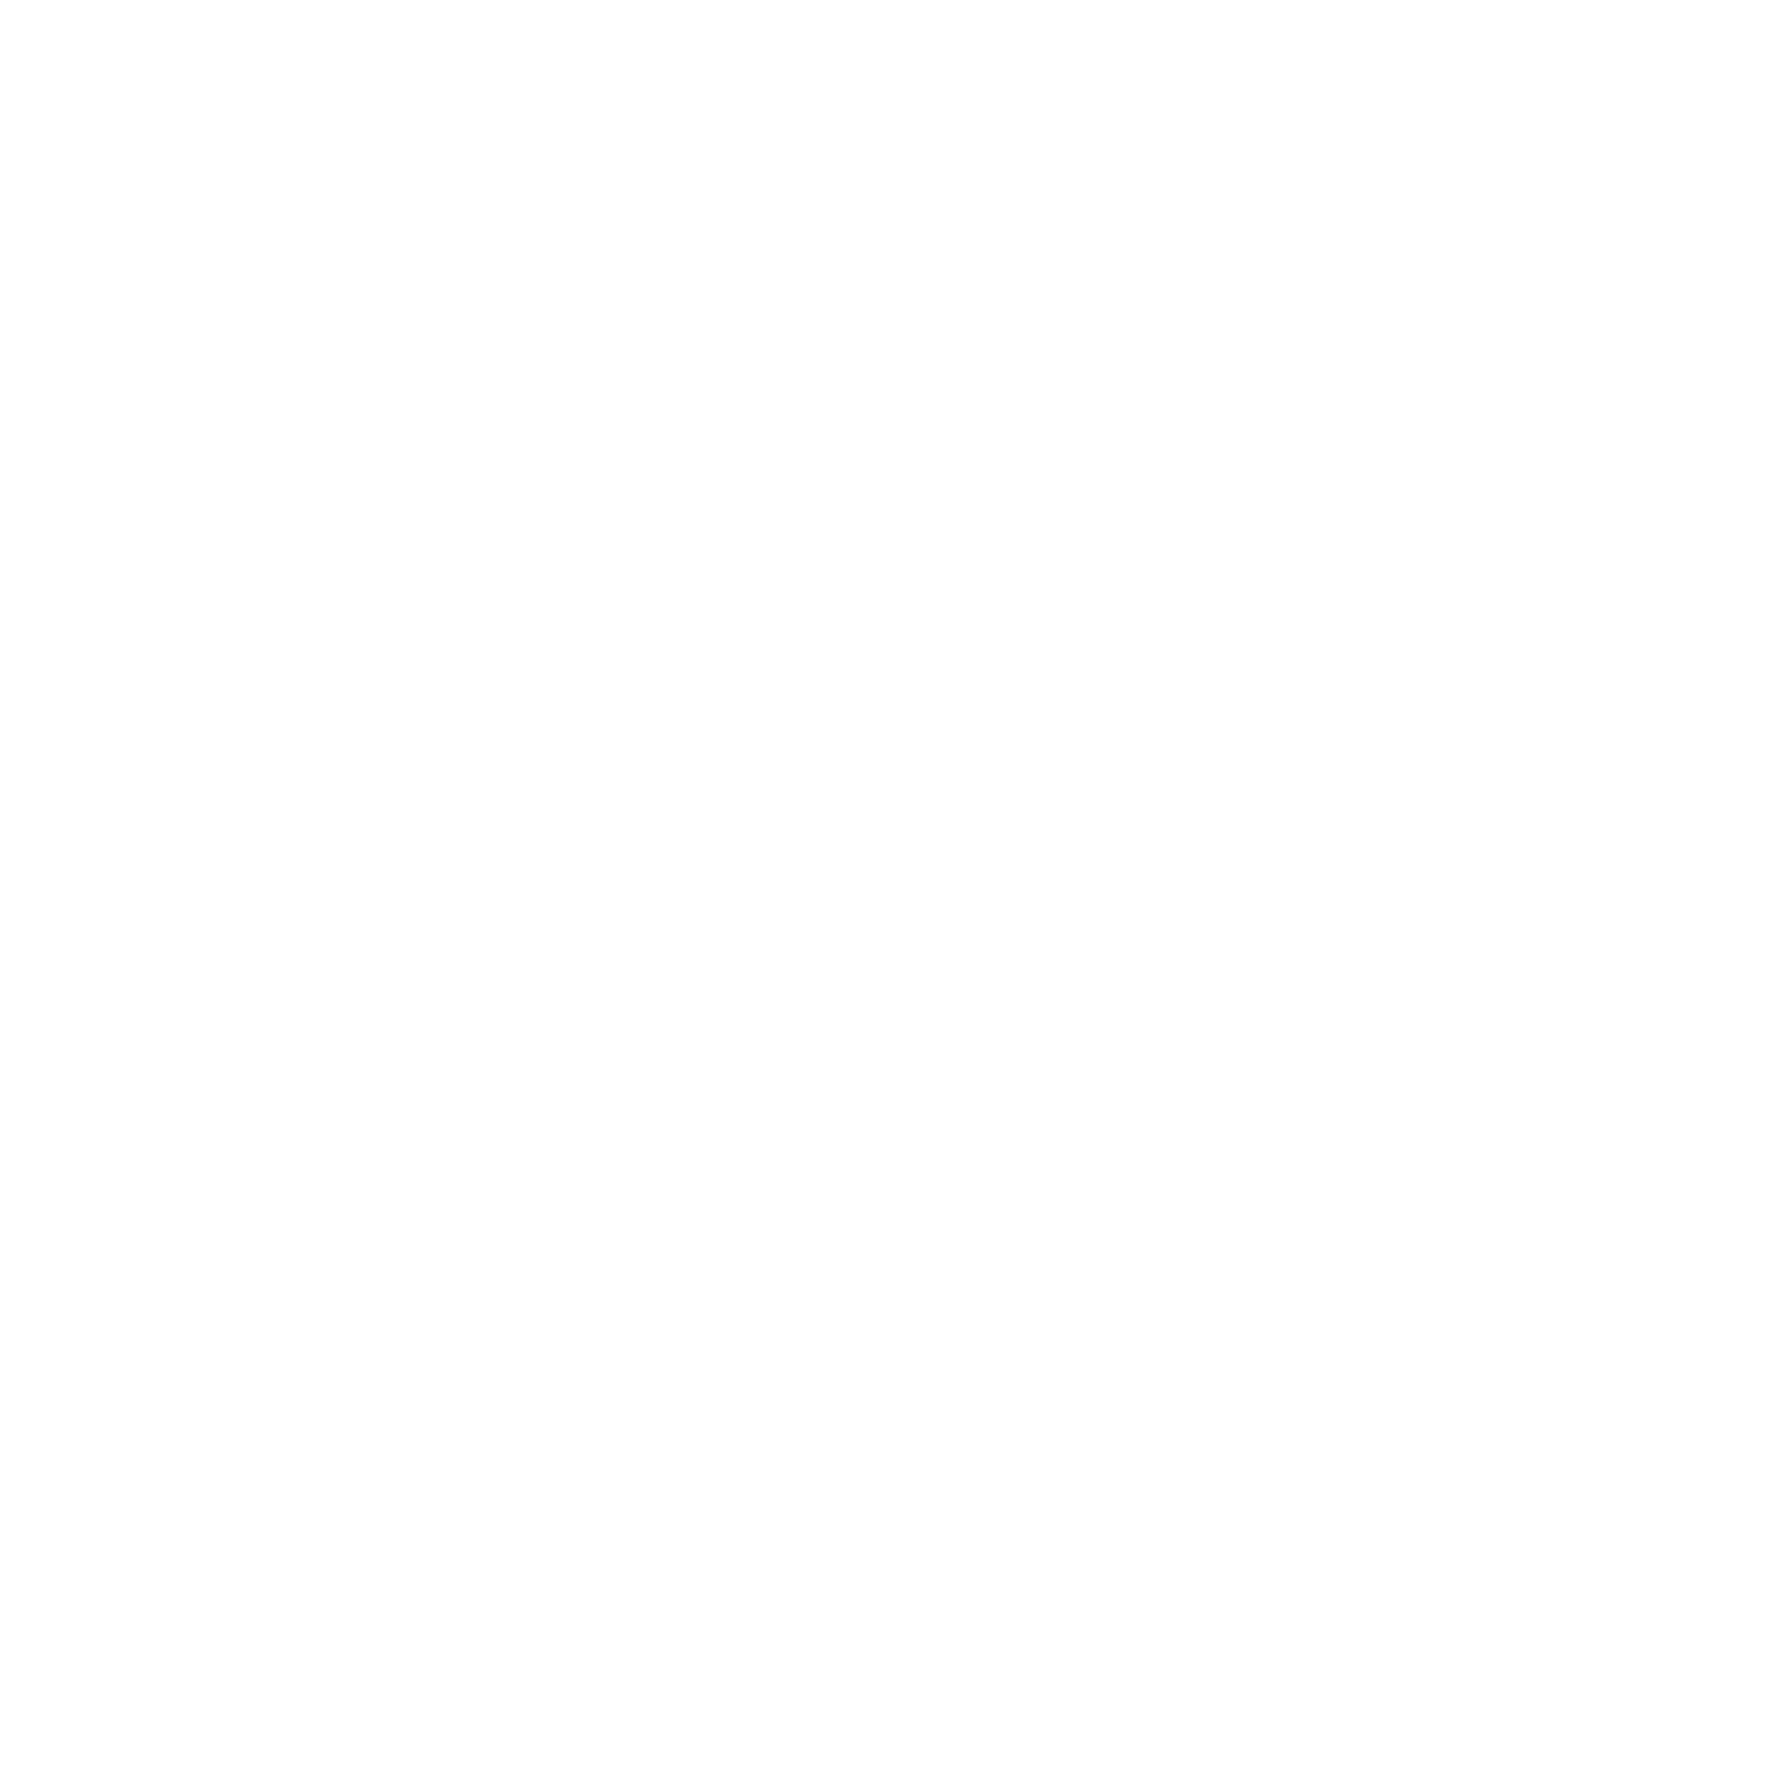 IN-direkt - DIE Zeitung für Ingolstadt - 100 % Regional